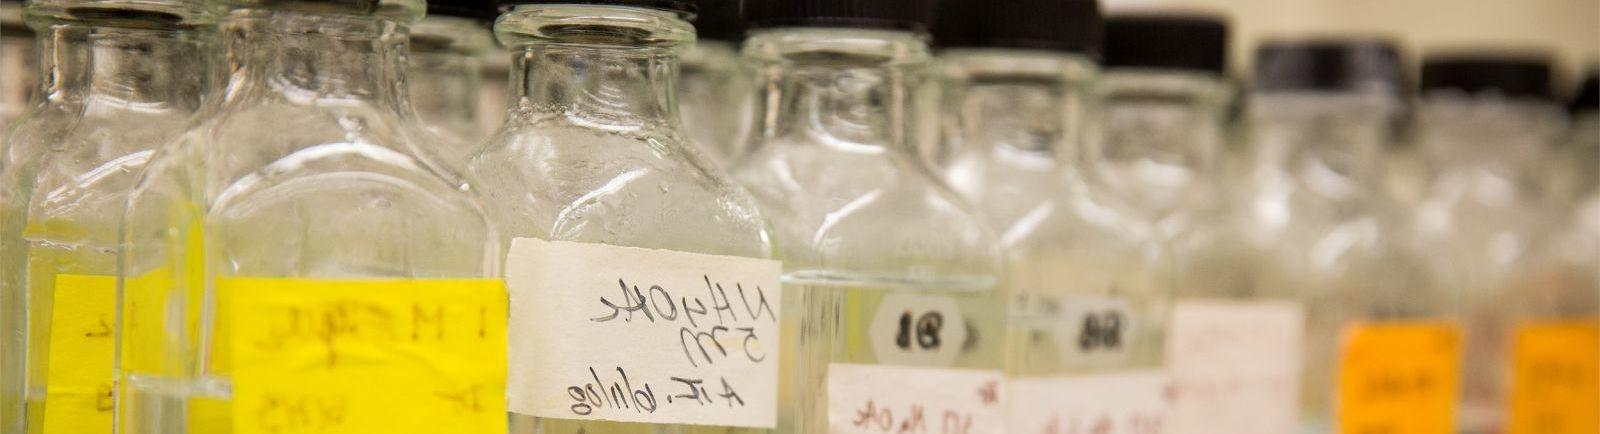 生物实验室里一排排贴着黄色标签的玻璃容器